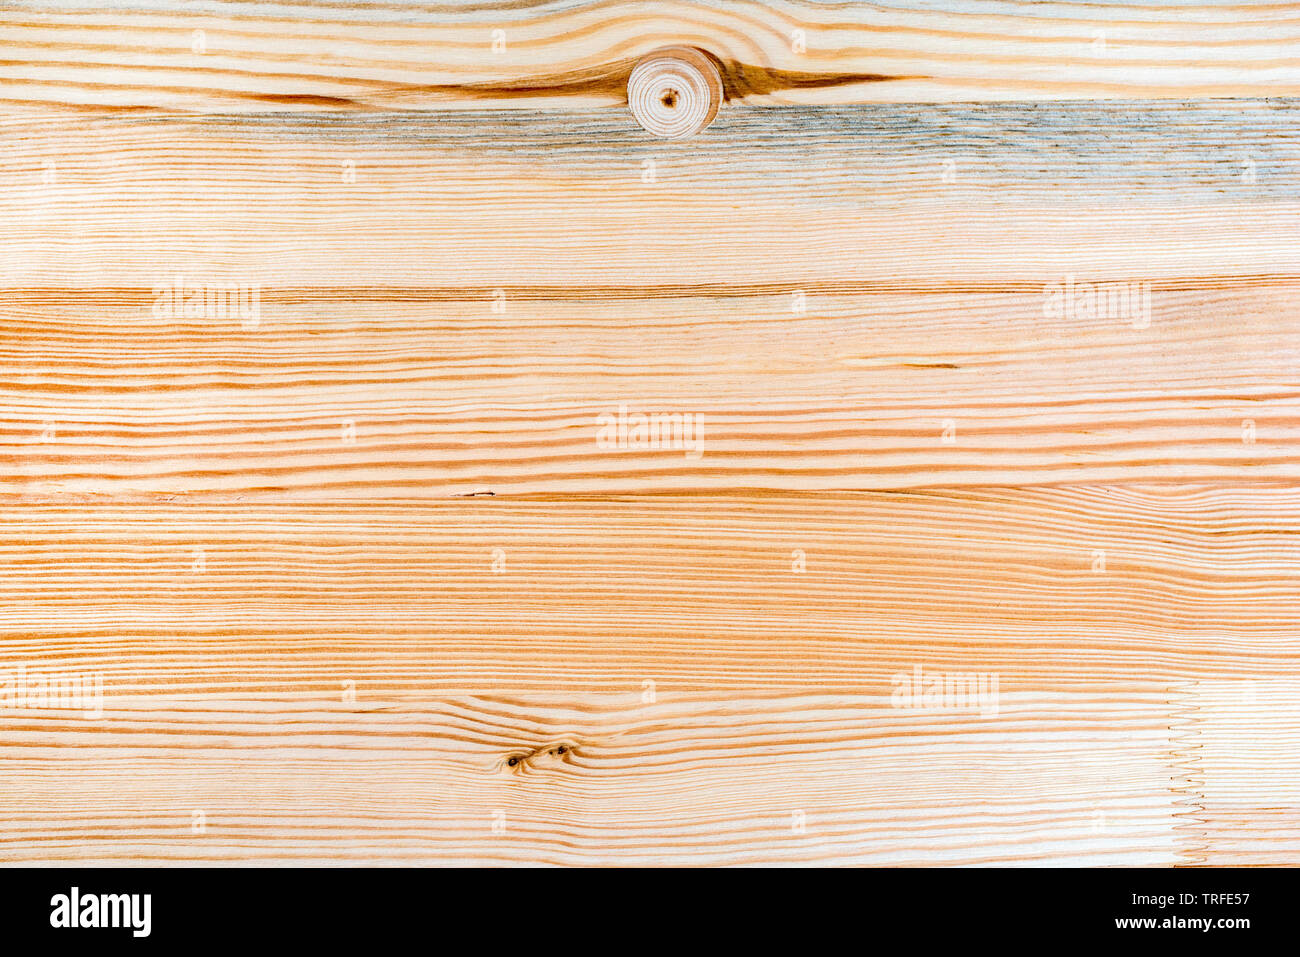 Eastern white pine Holzbrett board Textur als Hintergrund, Ansicht von oben Stockfoto